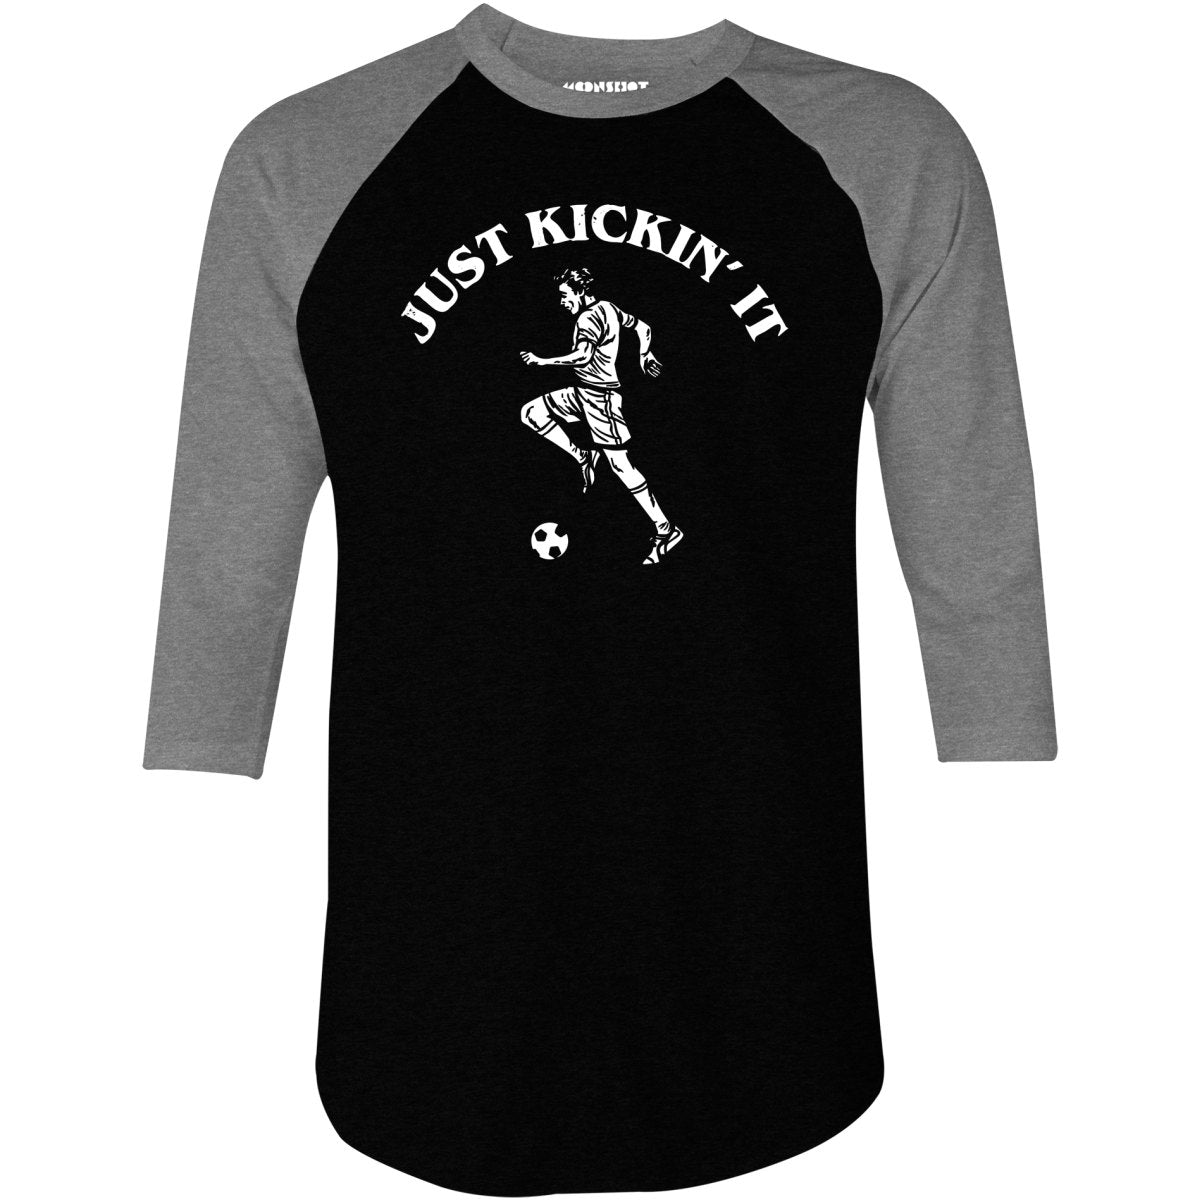 Just Kickin' It - 3/4 Sleeve Raglan T-Shirt